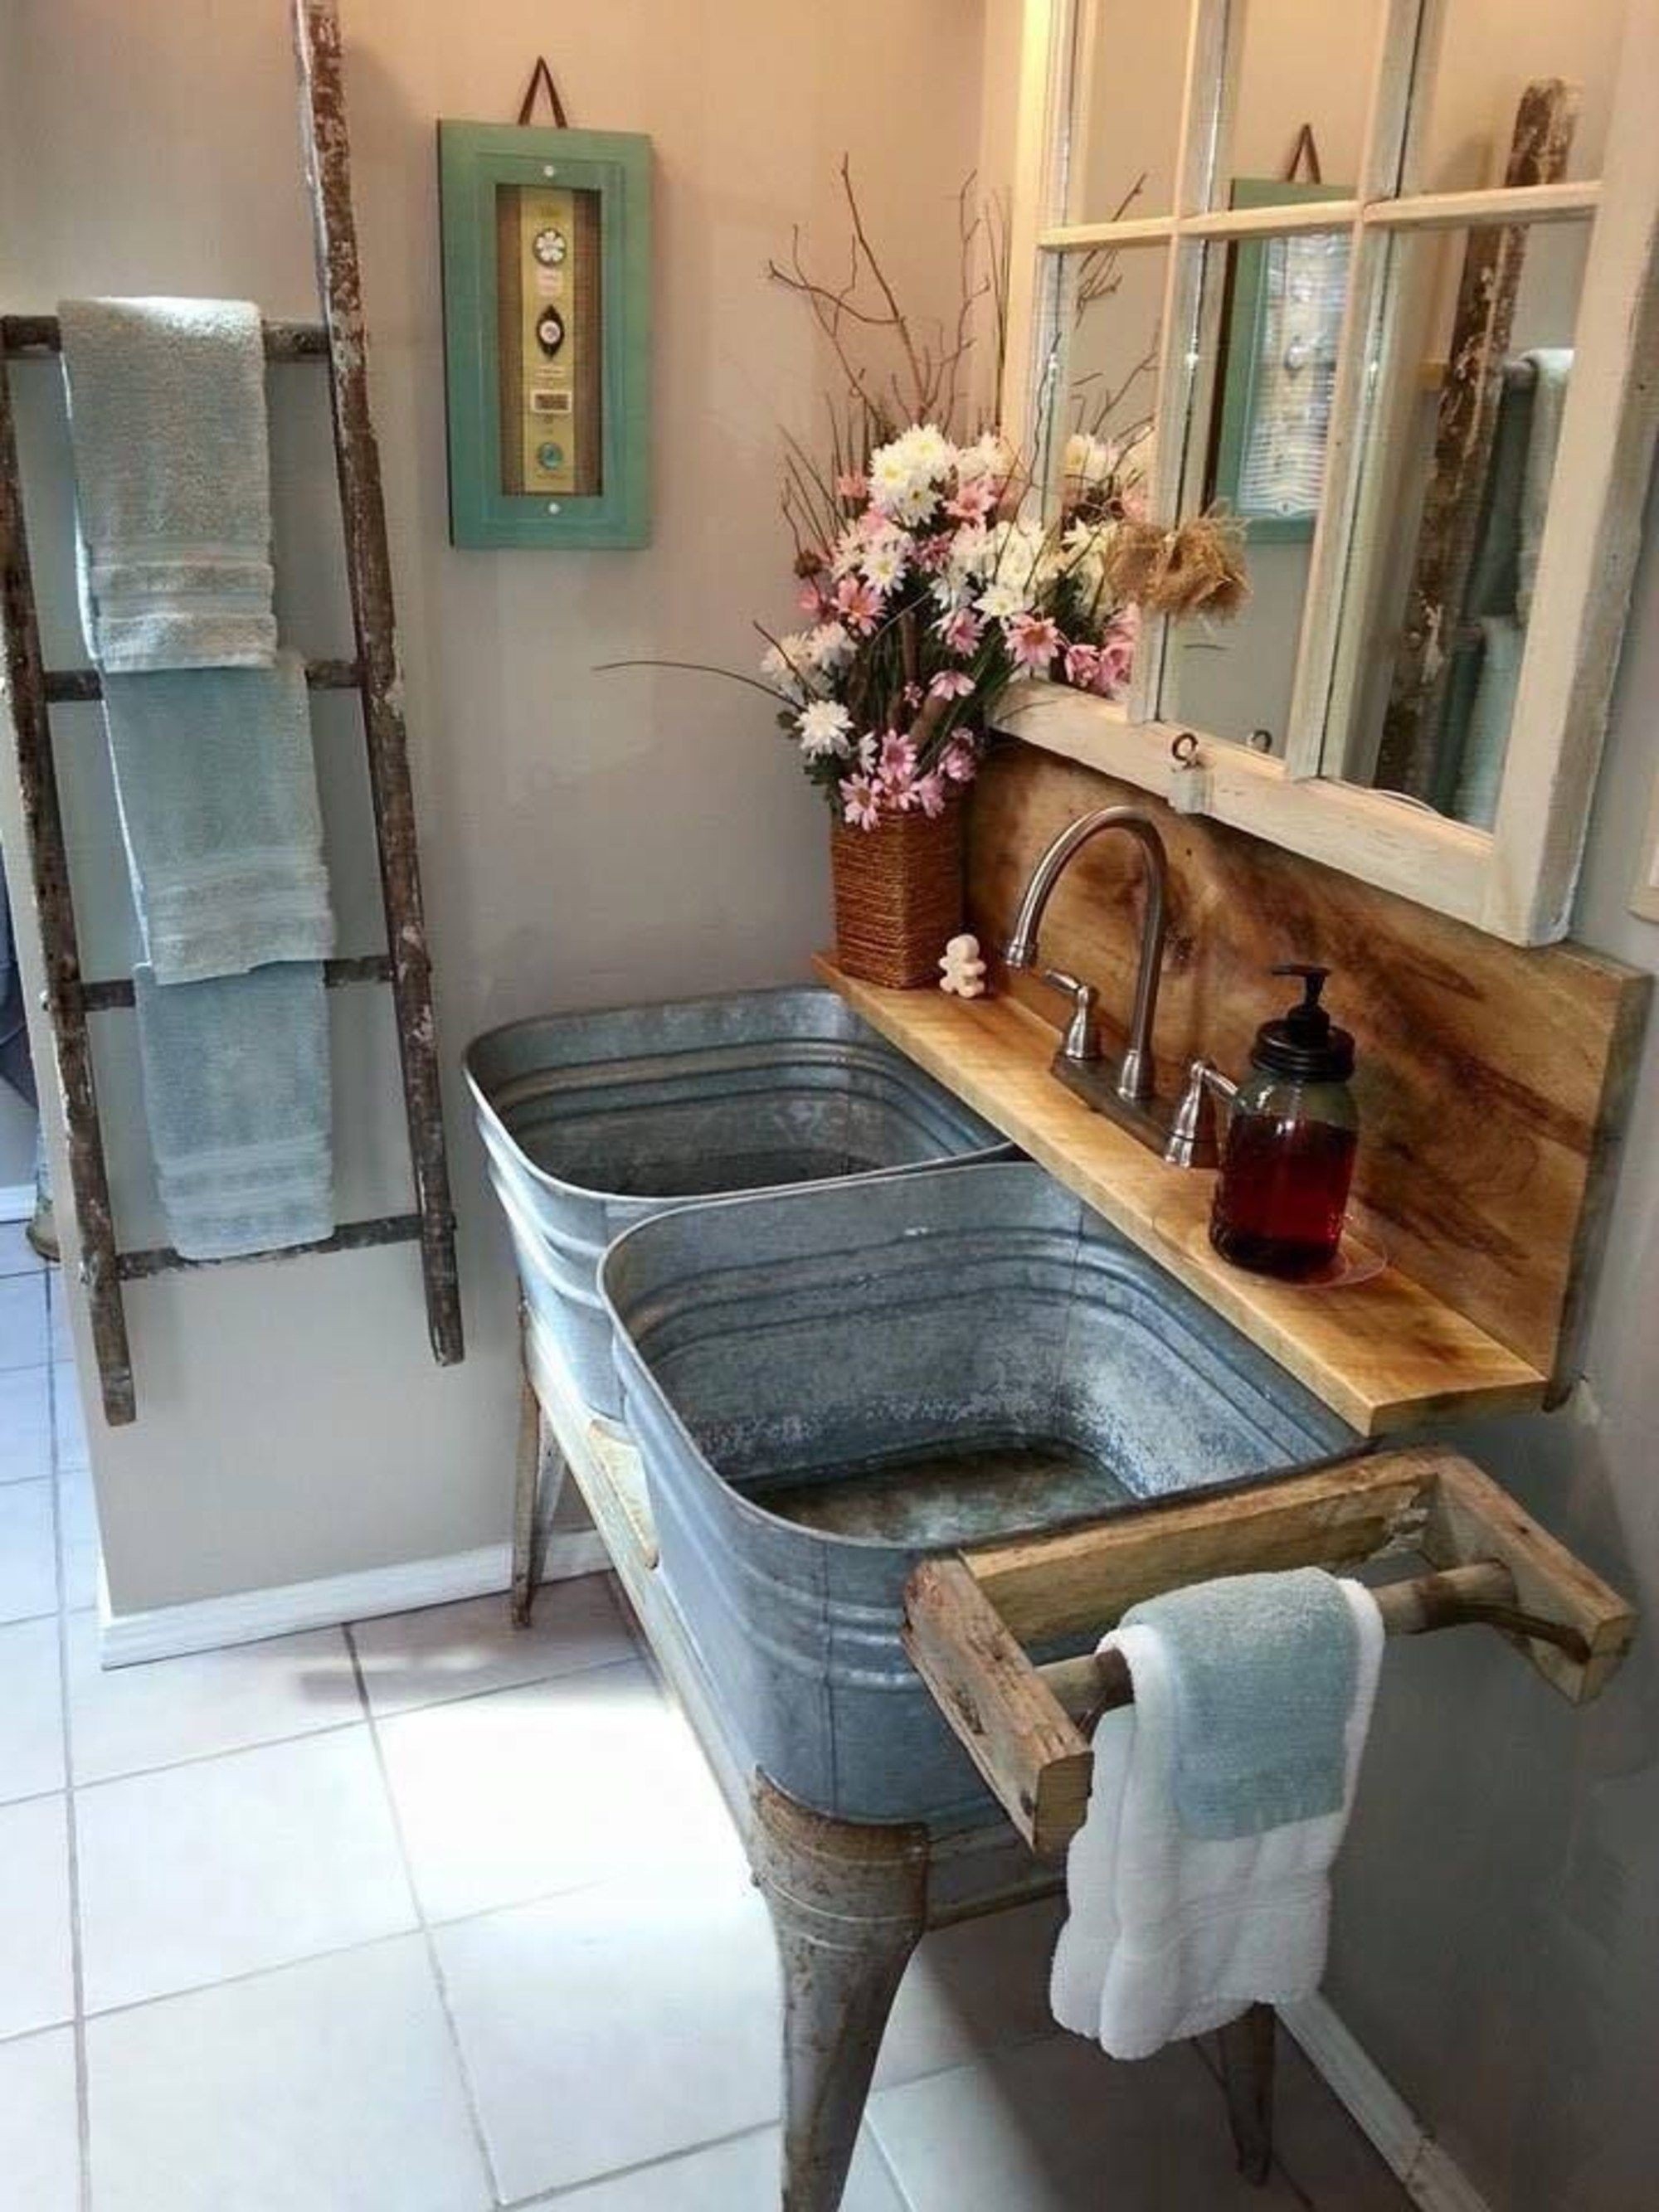 Bathroom with Vintage Pedestal Sink - Cottage - Bathroom